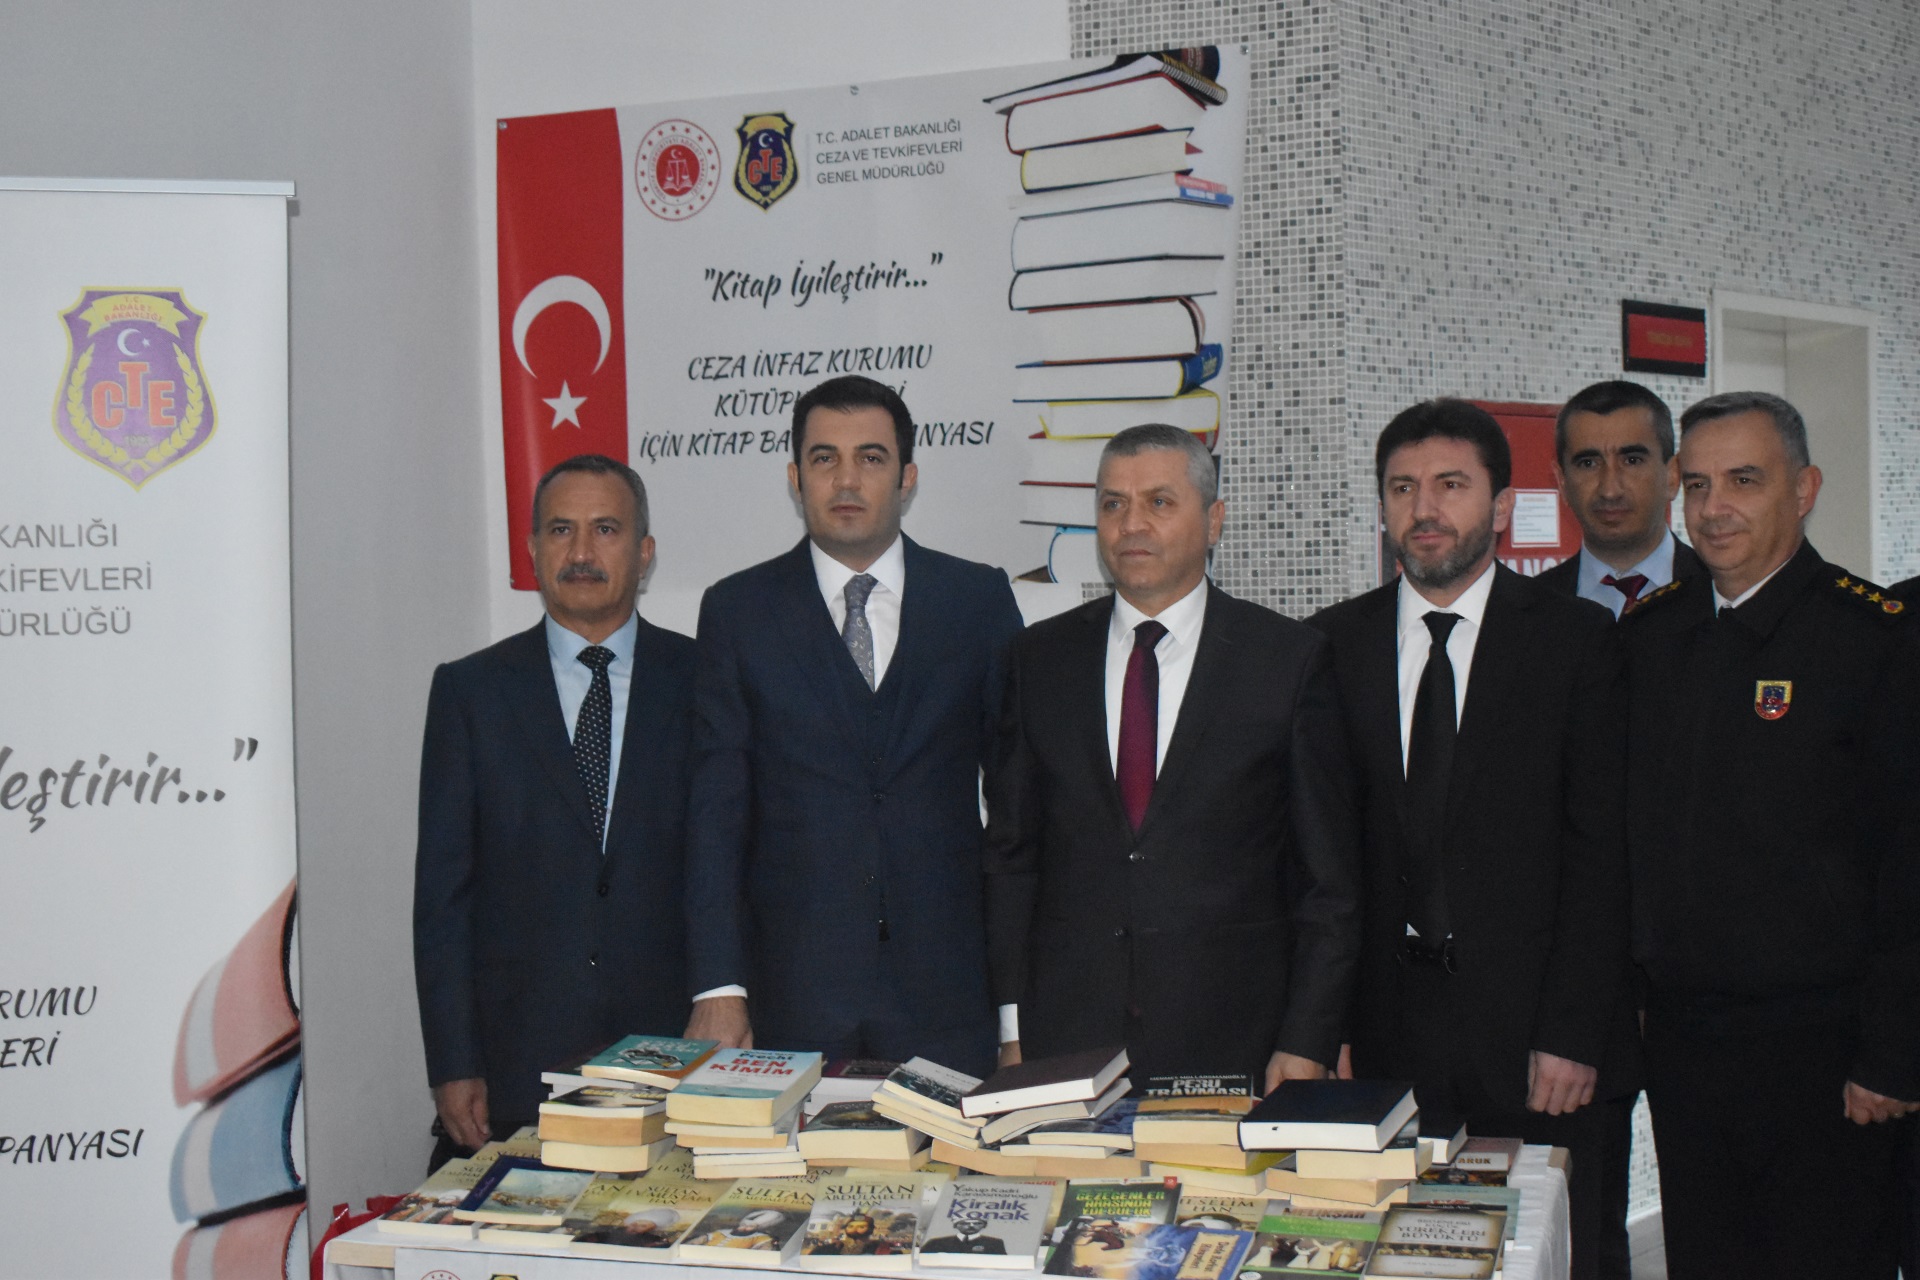 Manavgat'ta 'Kitap İyileştirir' bağış kampanyası başlatıldı